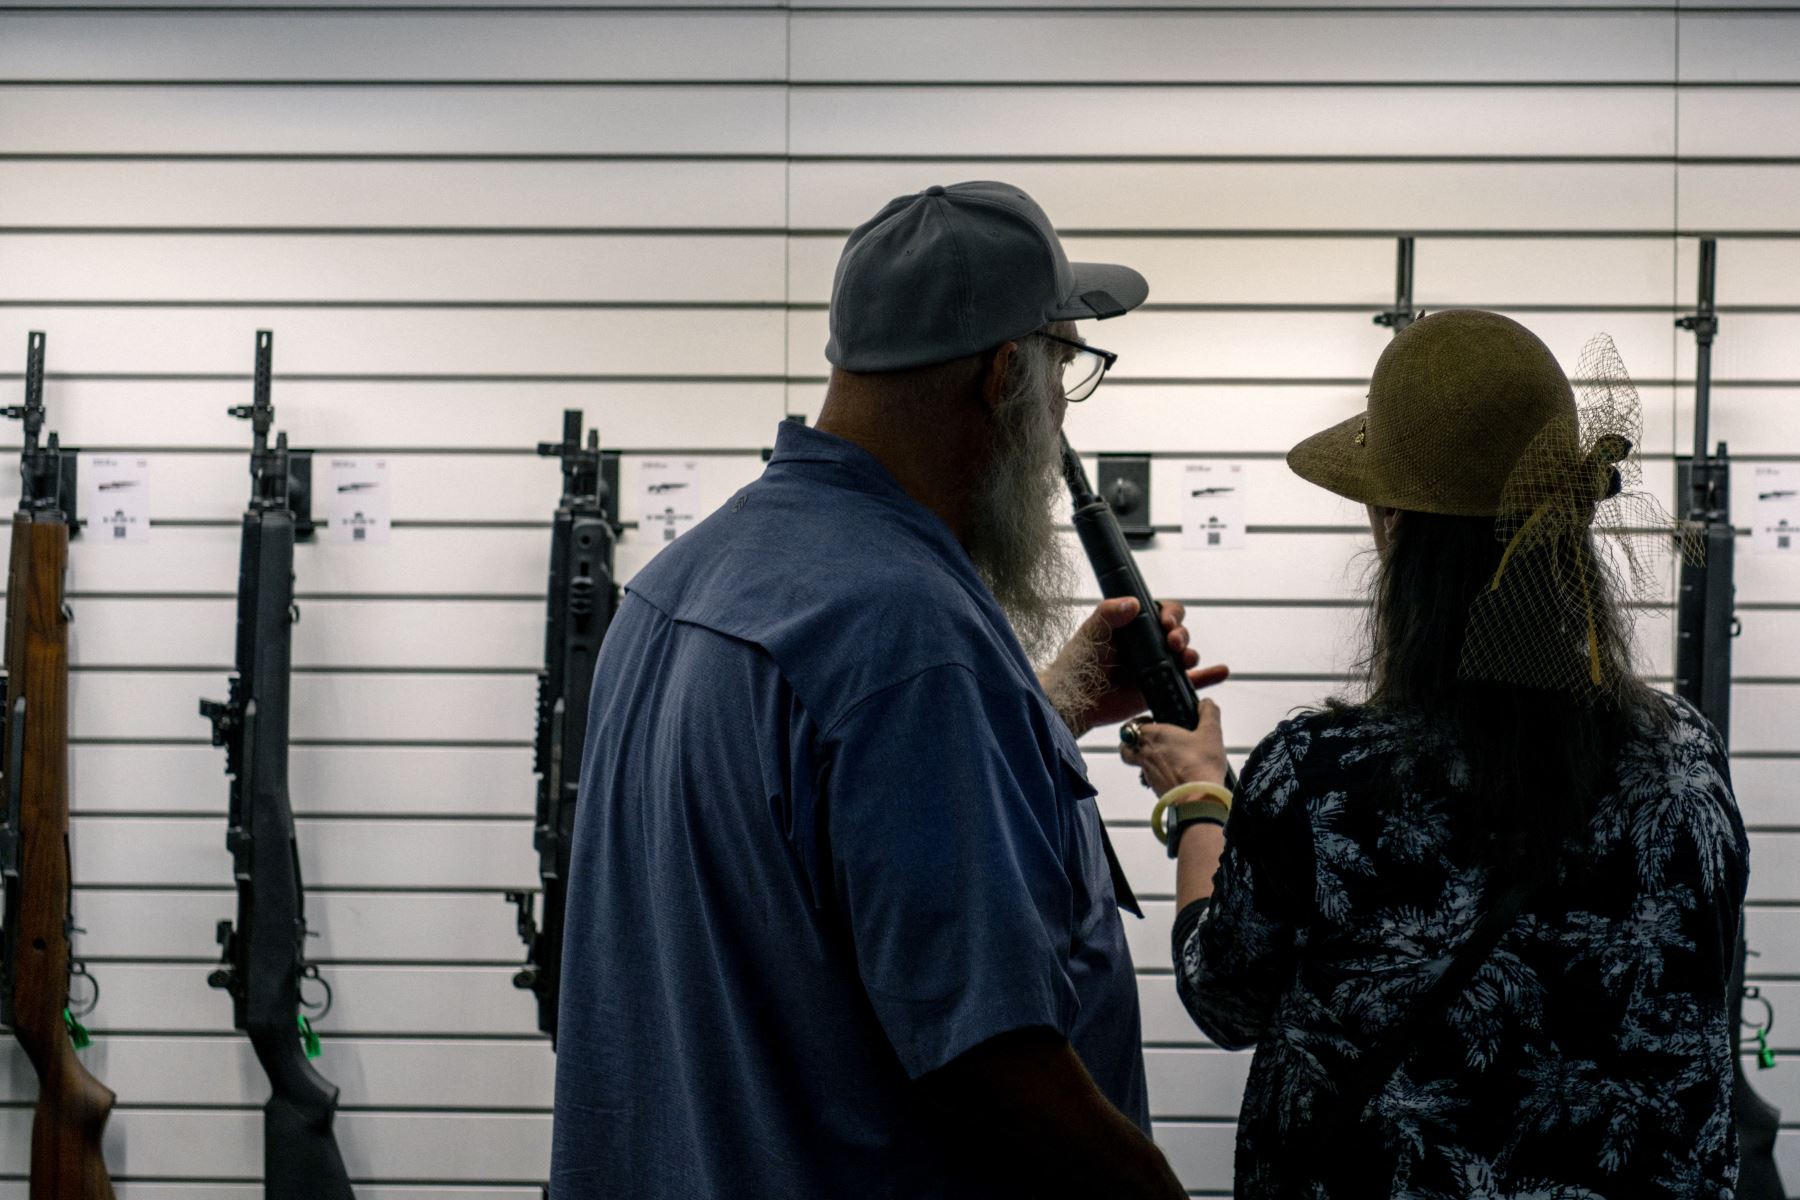 Una pareja examina un rifle en el Centro de Convenciones George R. Brown durante la convención anual de la Asociación Nacional del Rifle (NRA) el 27 de mayo de 2022 en Houston, Texas.
Foto: AFP